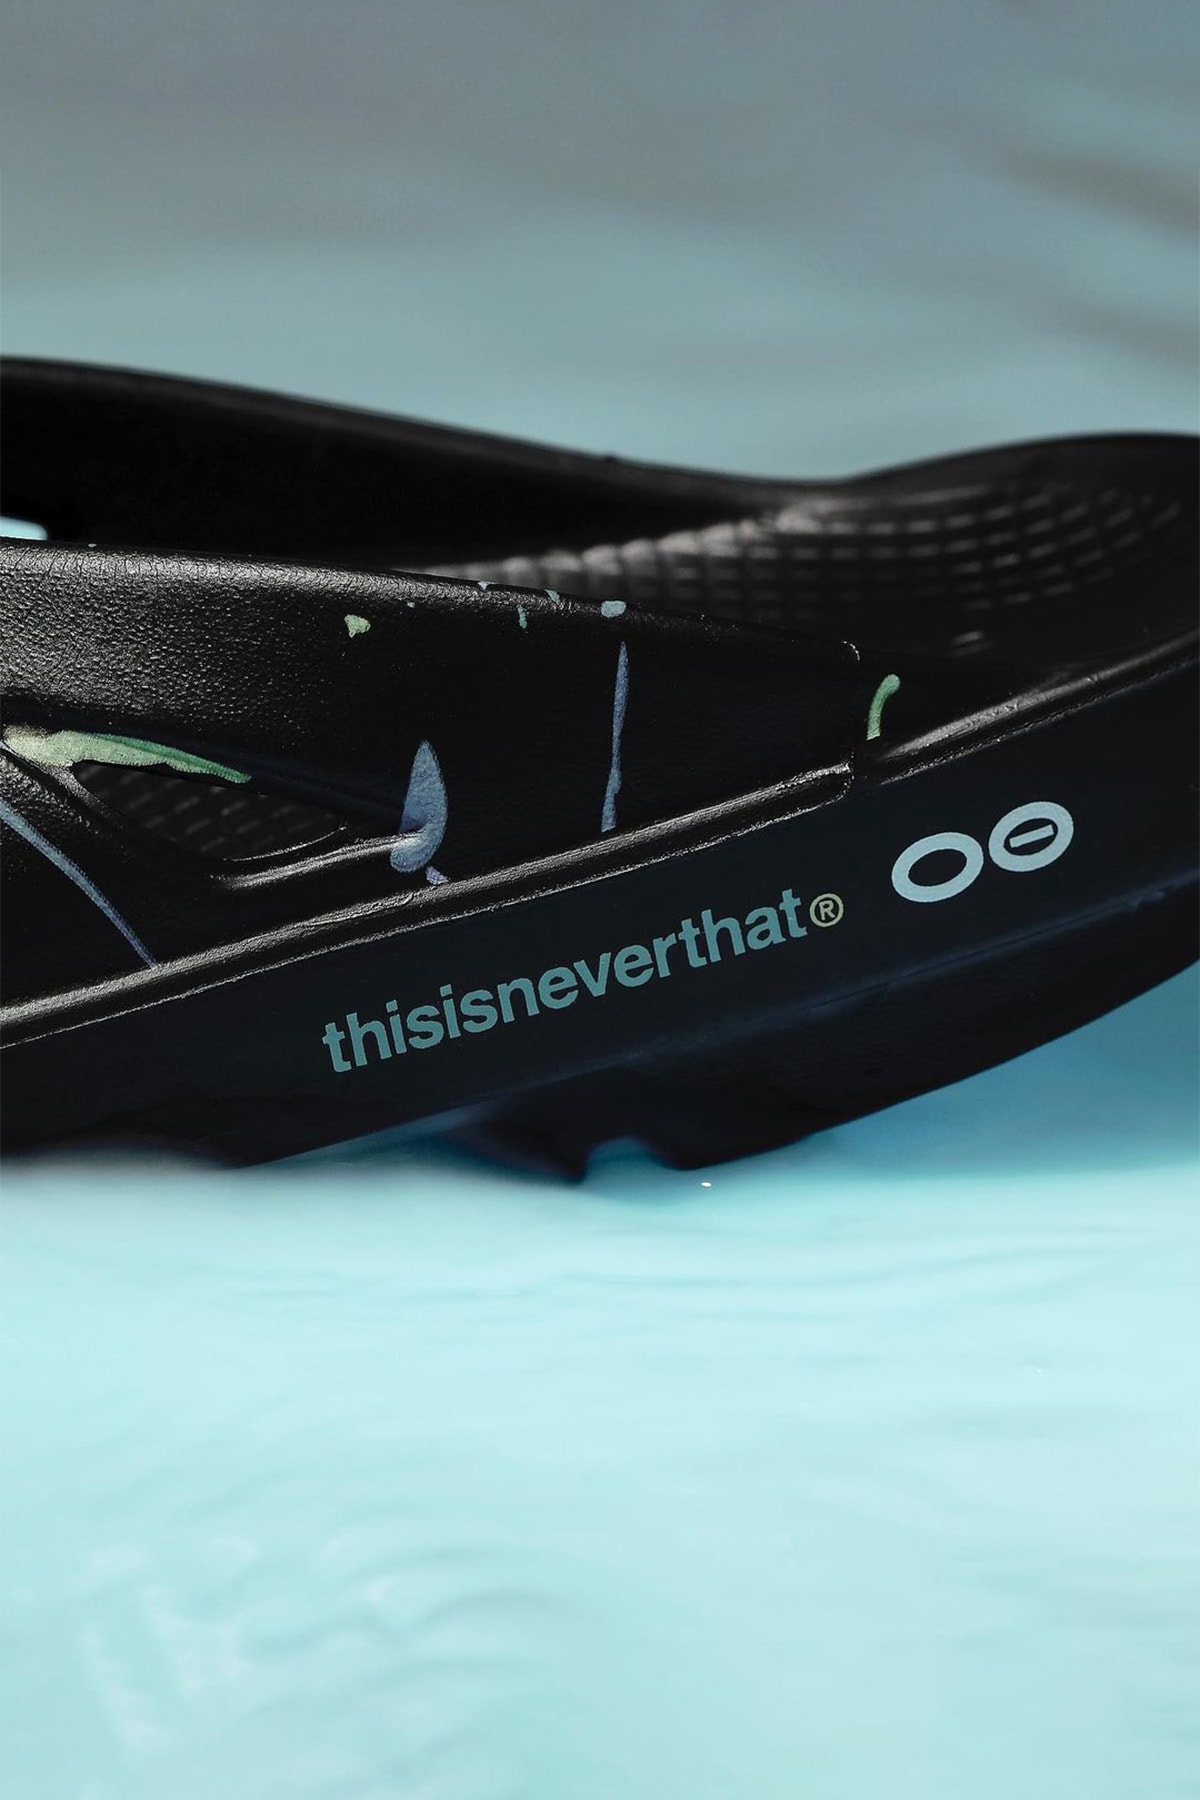 thisisneverthat x OOFOS 全新聯名系列鞋款正式發佈